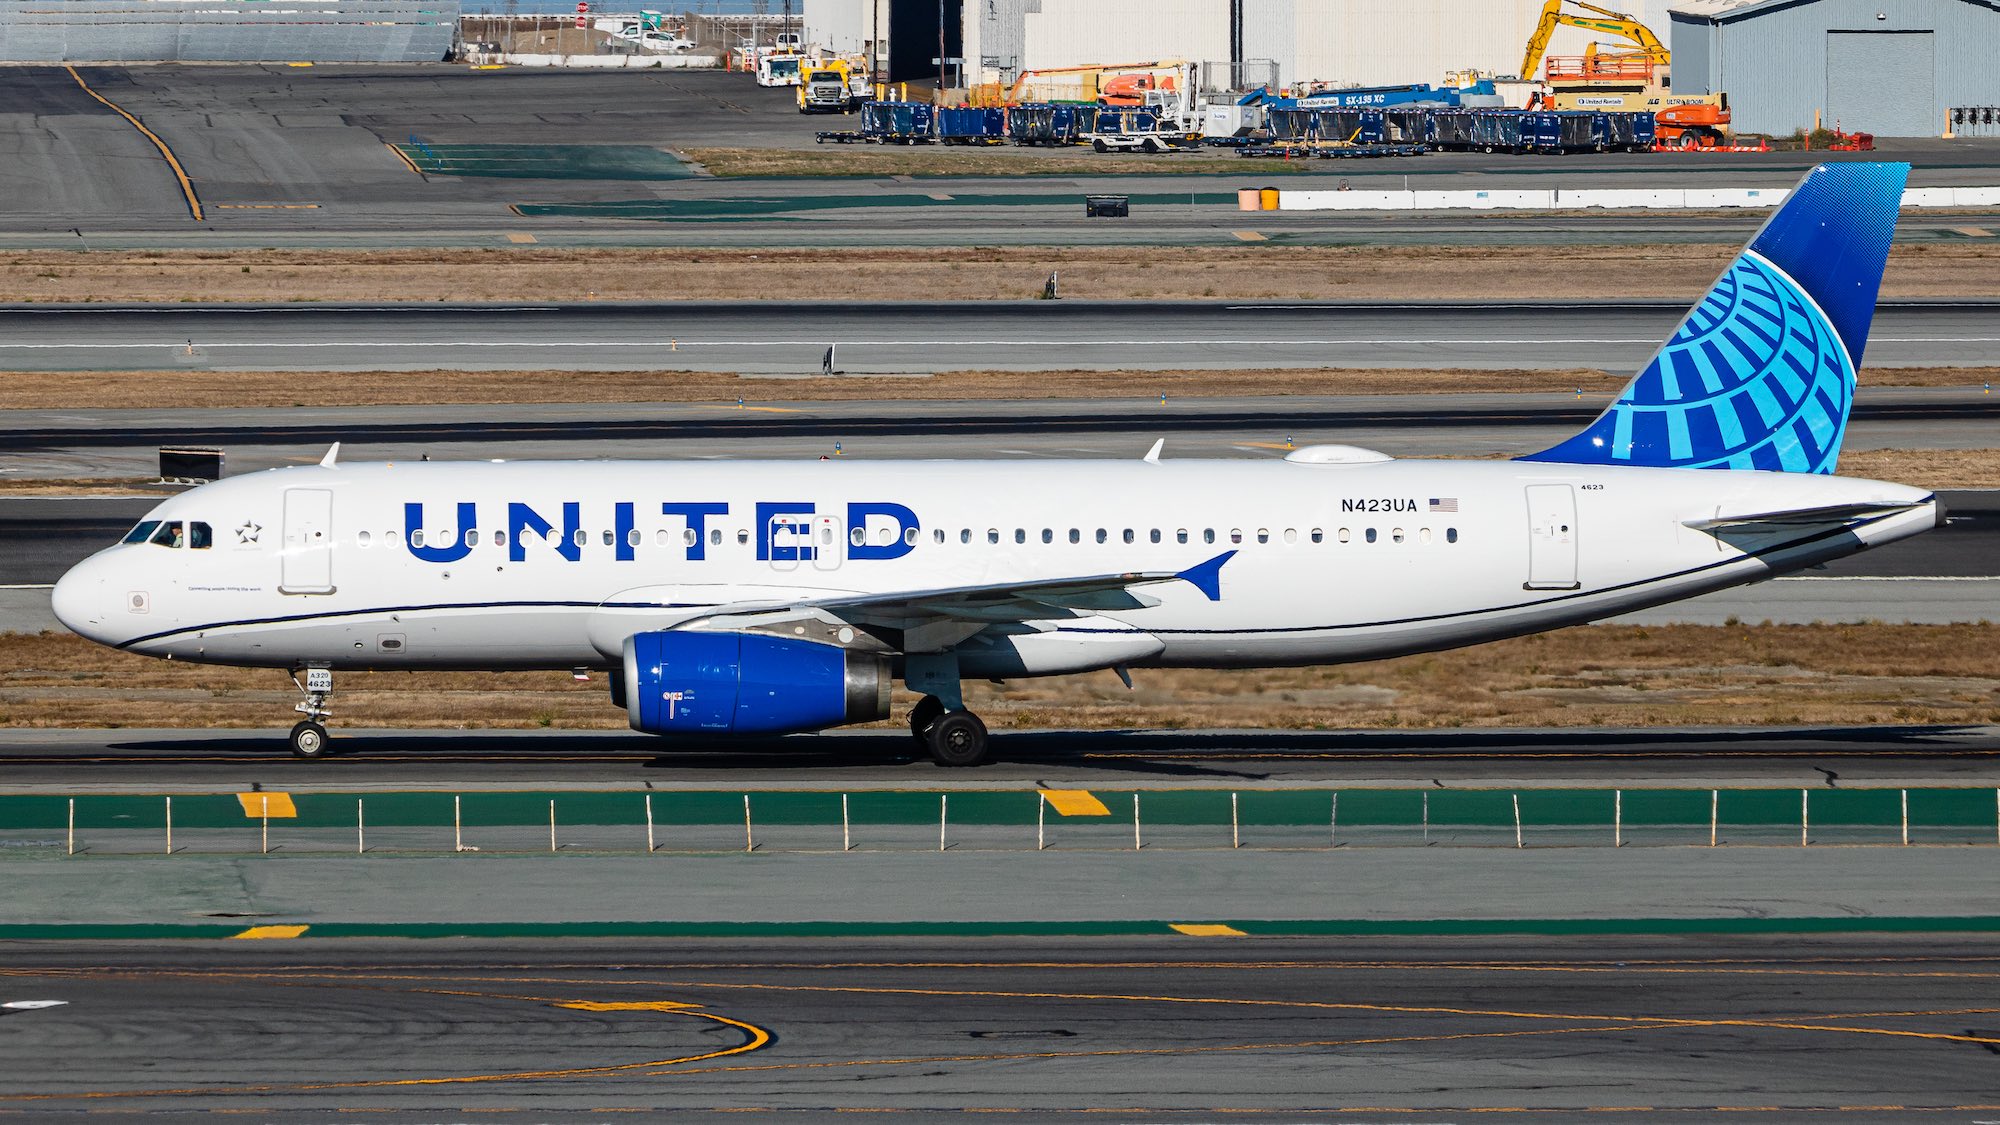 l'image représente un avion de United Airlines qui a fait l'objet d'un surbooking donnant lieu à une indemnisation